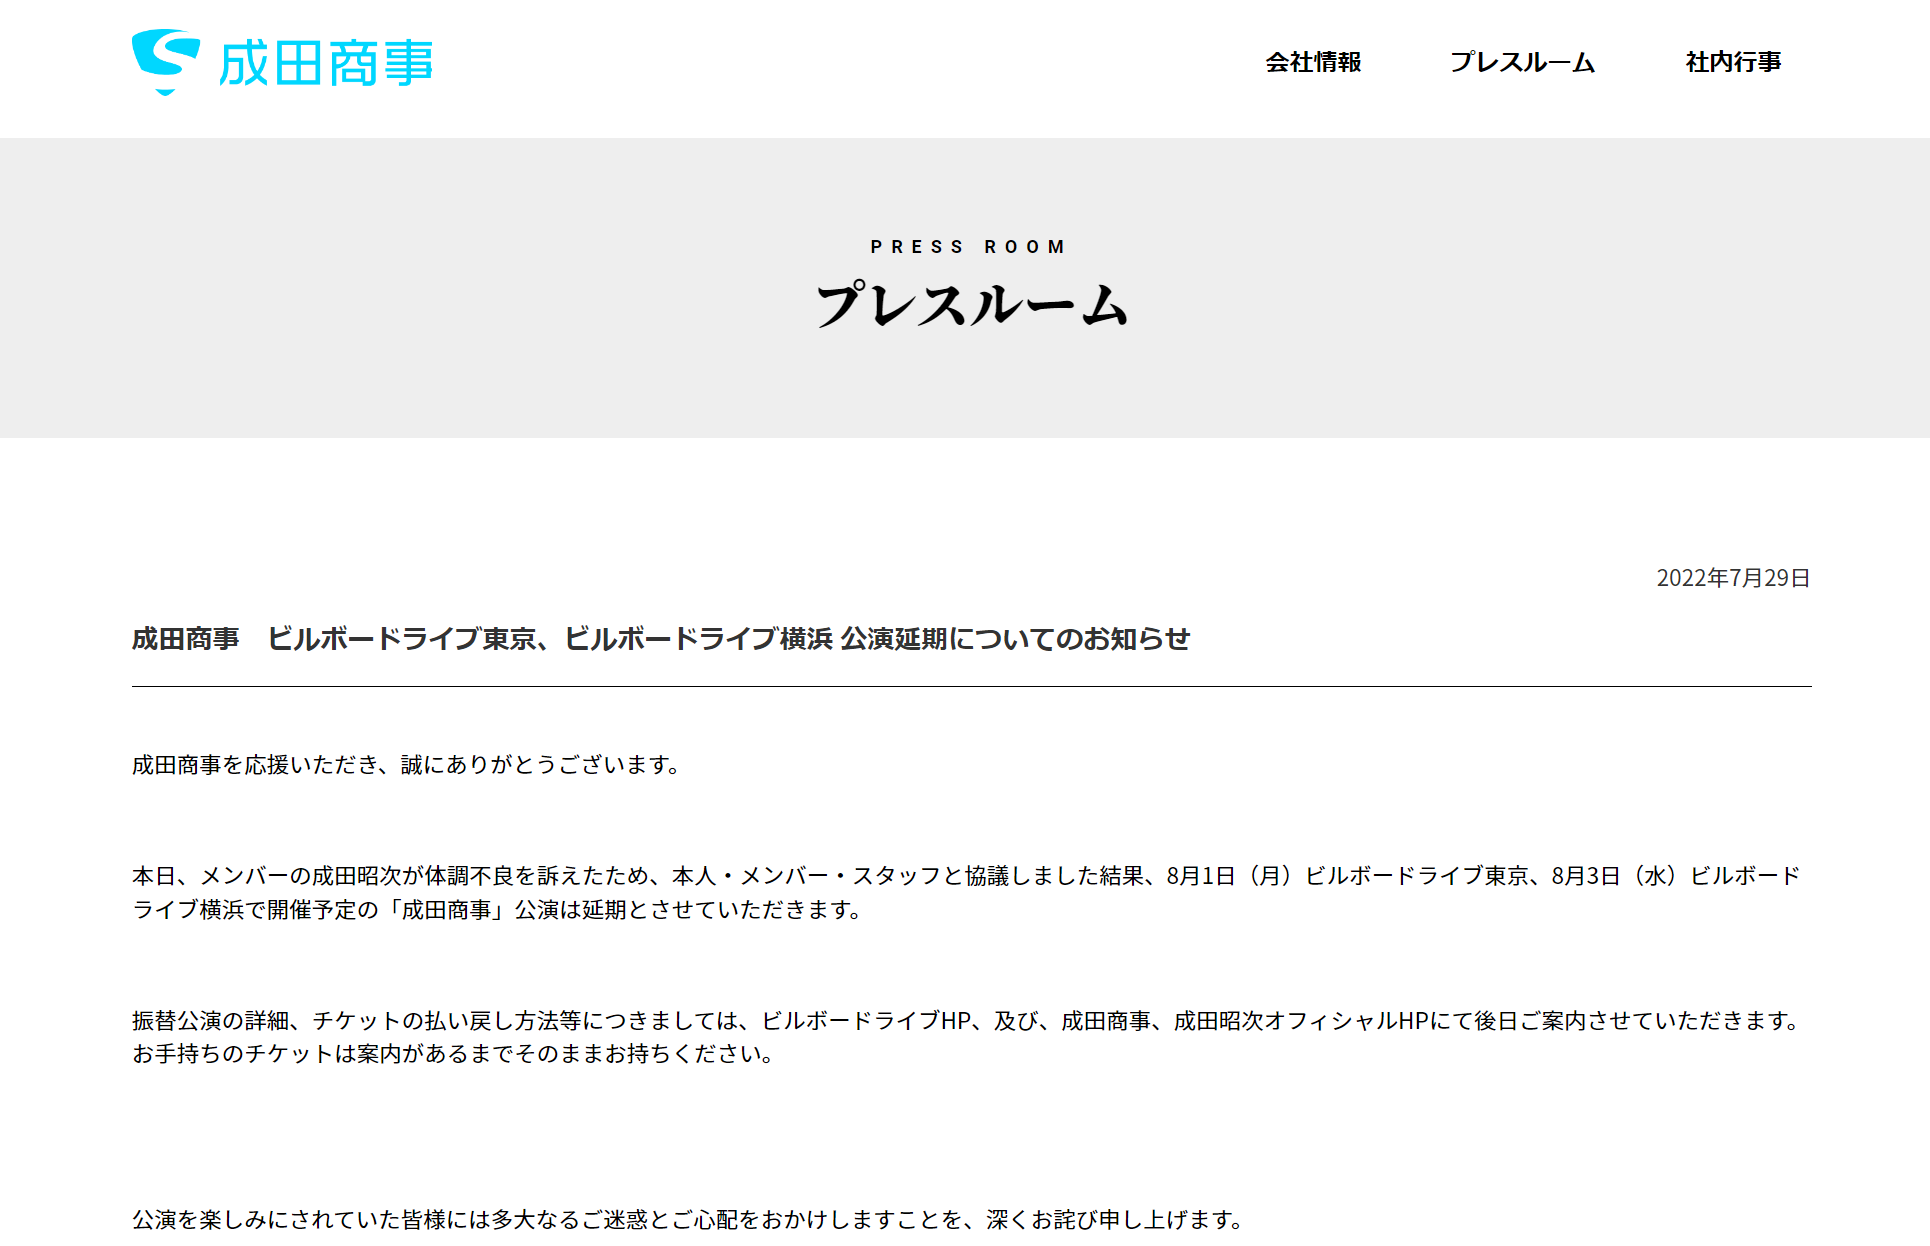 成田商事公式サイトに掲載された案内文のキャプチャ画像